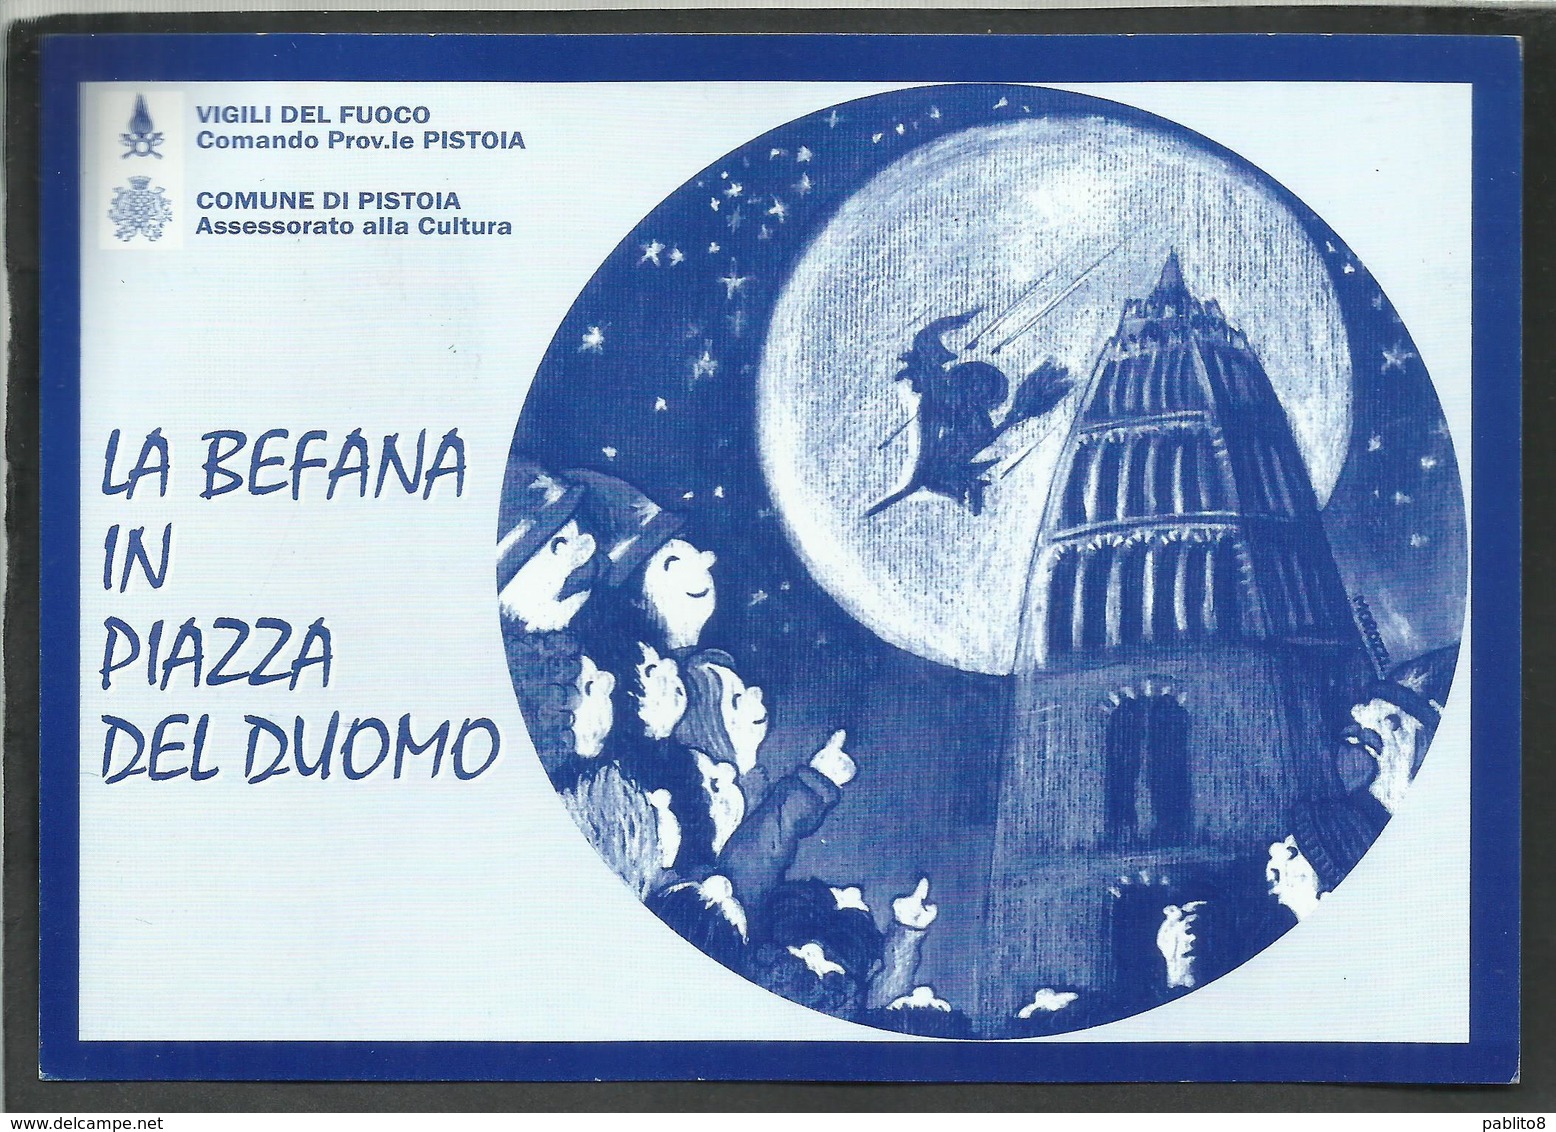 ITALIA REPUBBLICA ITALY REPUBLIC 7 1 2001 UNICEF LA BEFANA IN PIAZZA DEL DUOMO PISTOIA VIGILI DEL FUOCO CARTOLINA CARD - Demonstrations